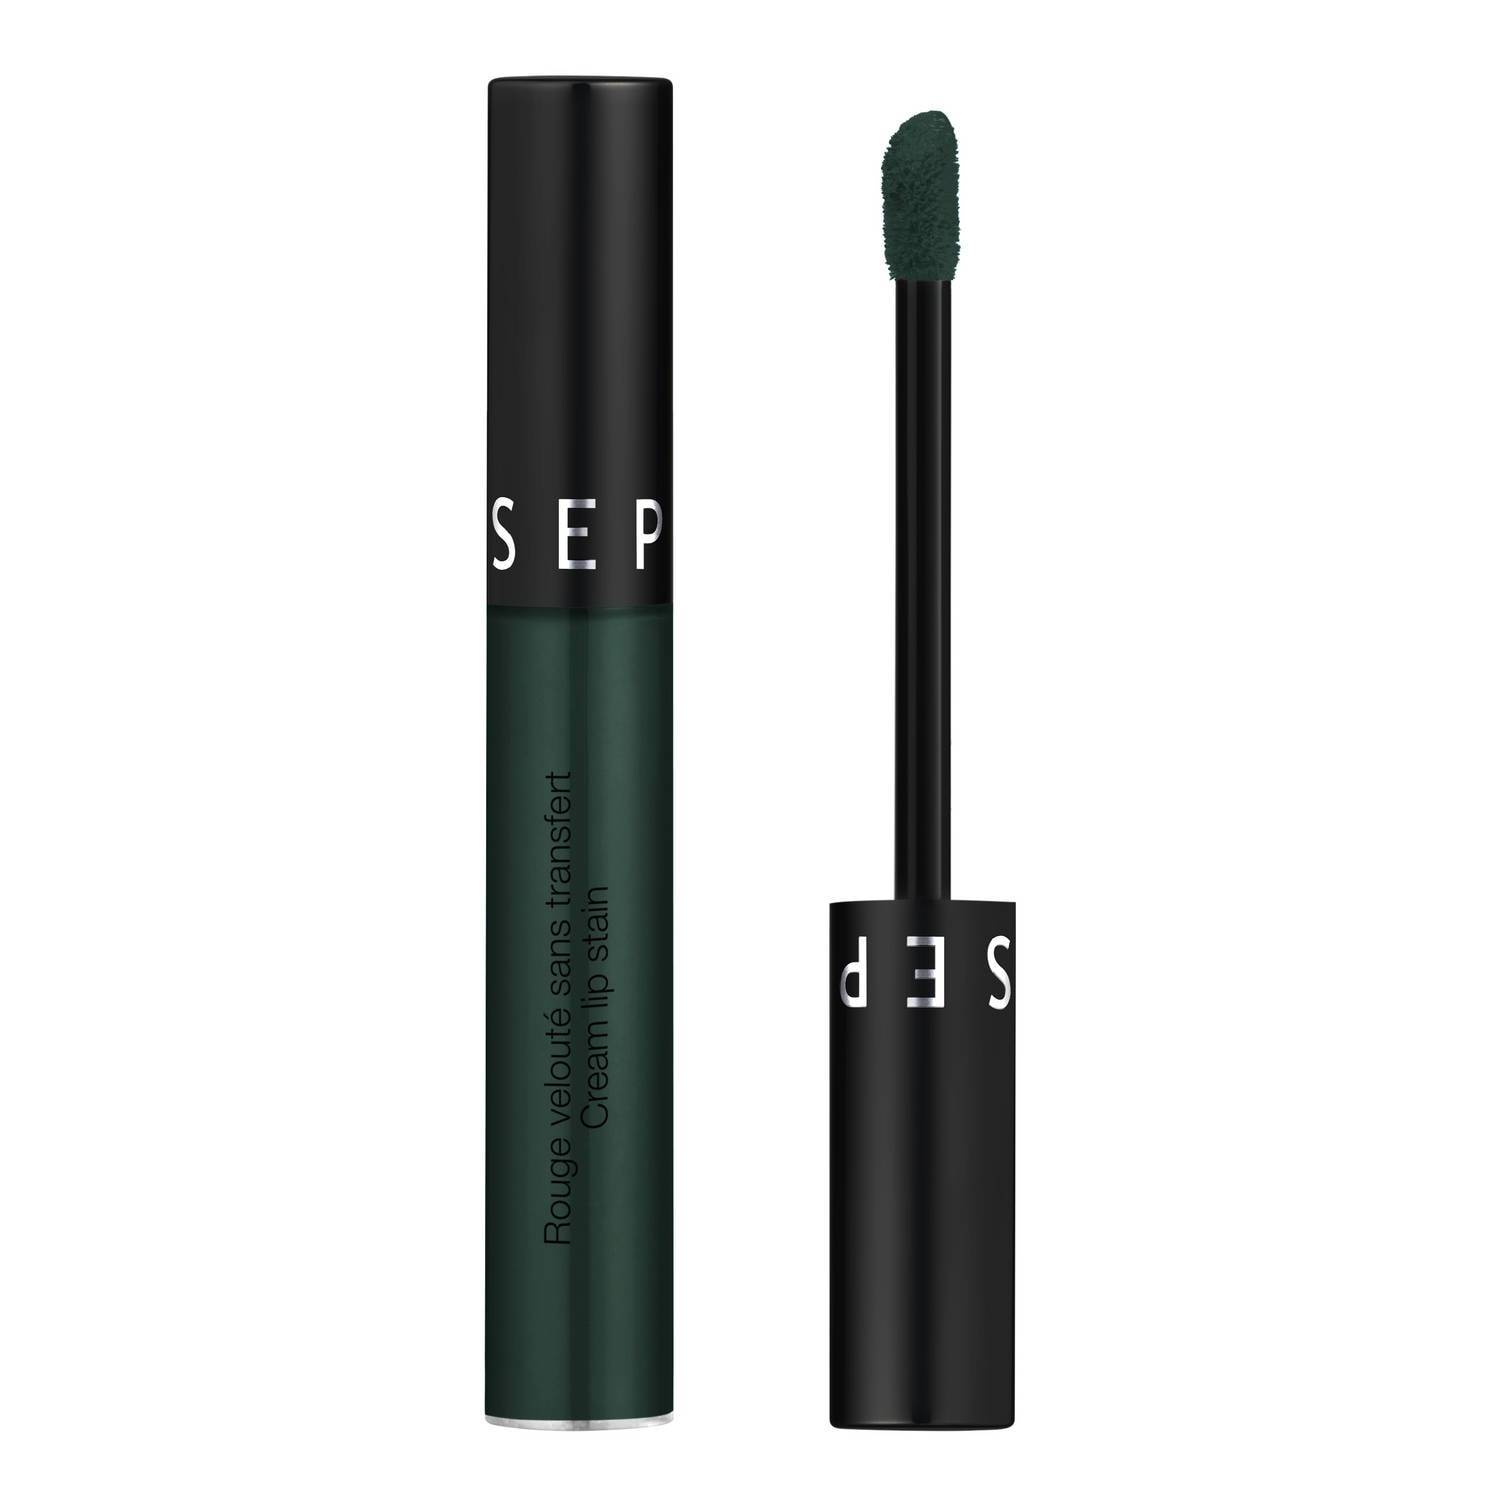 Sephora Collection Cream Lip Stain Matte Liquid Lipstick 5Ml 29. Dark Forest